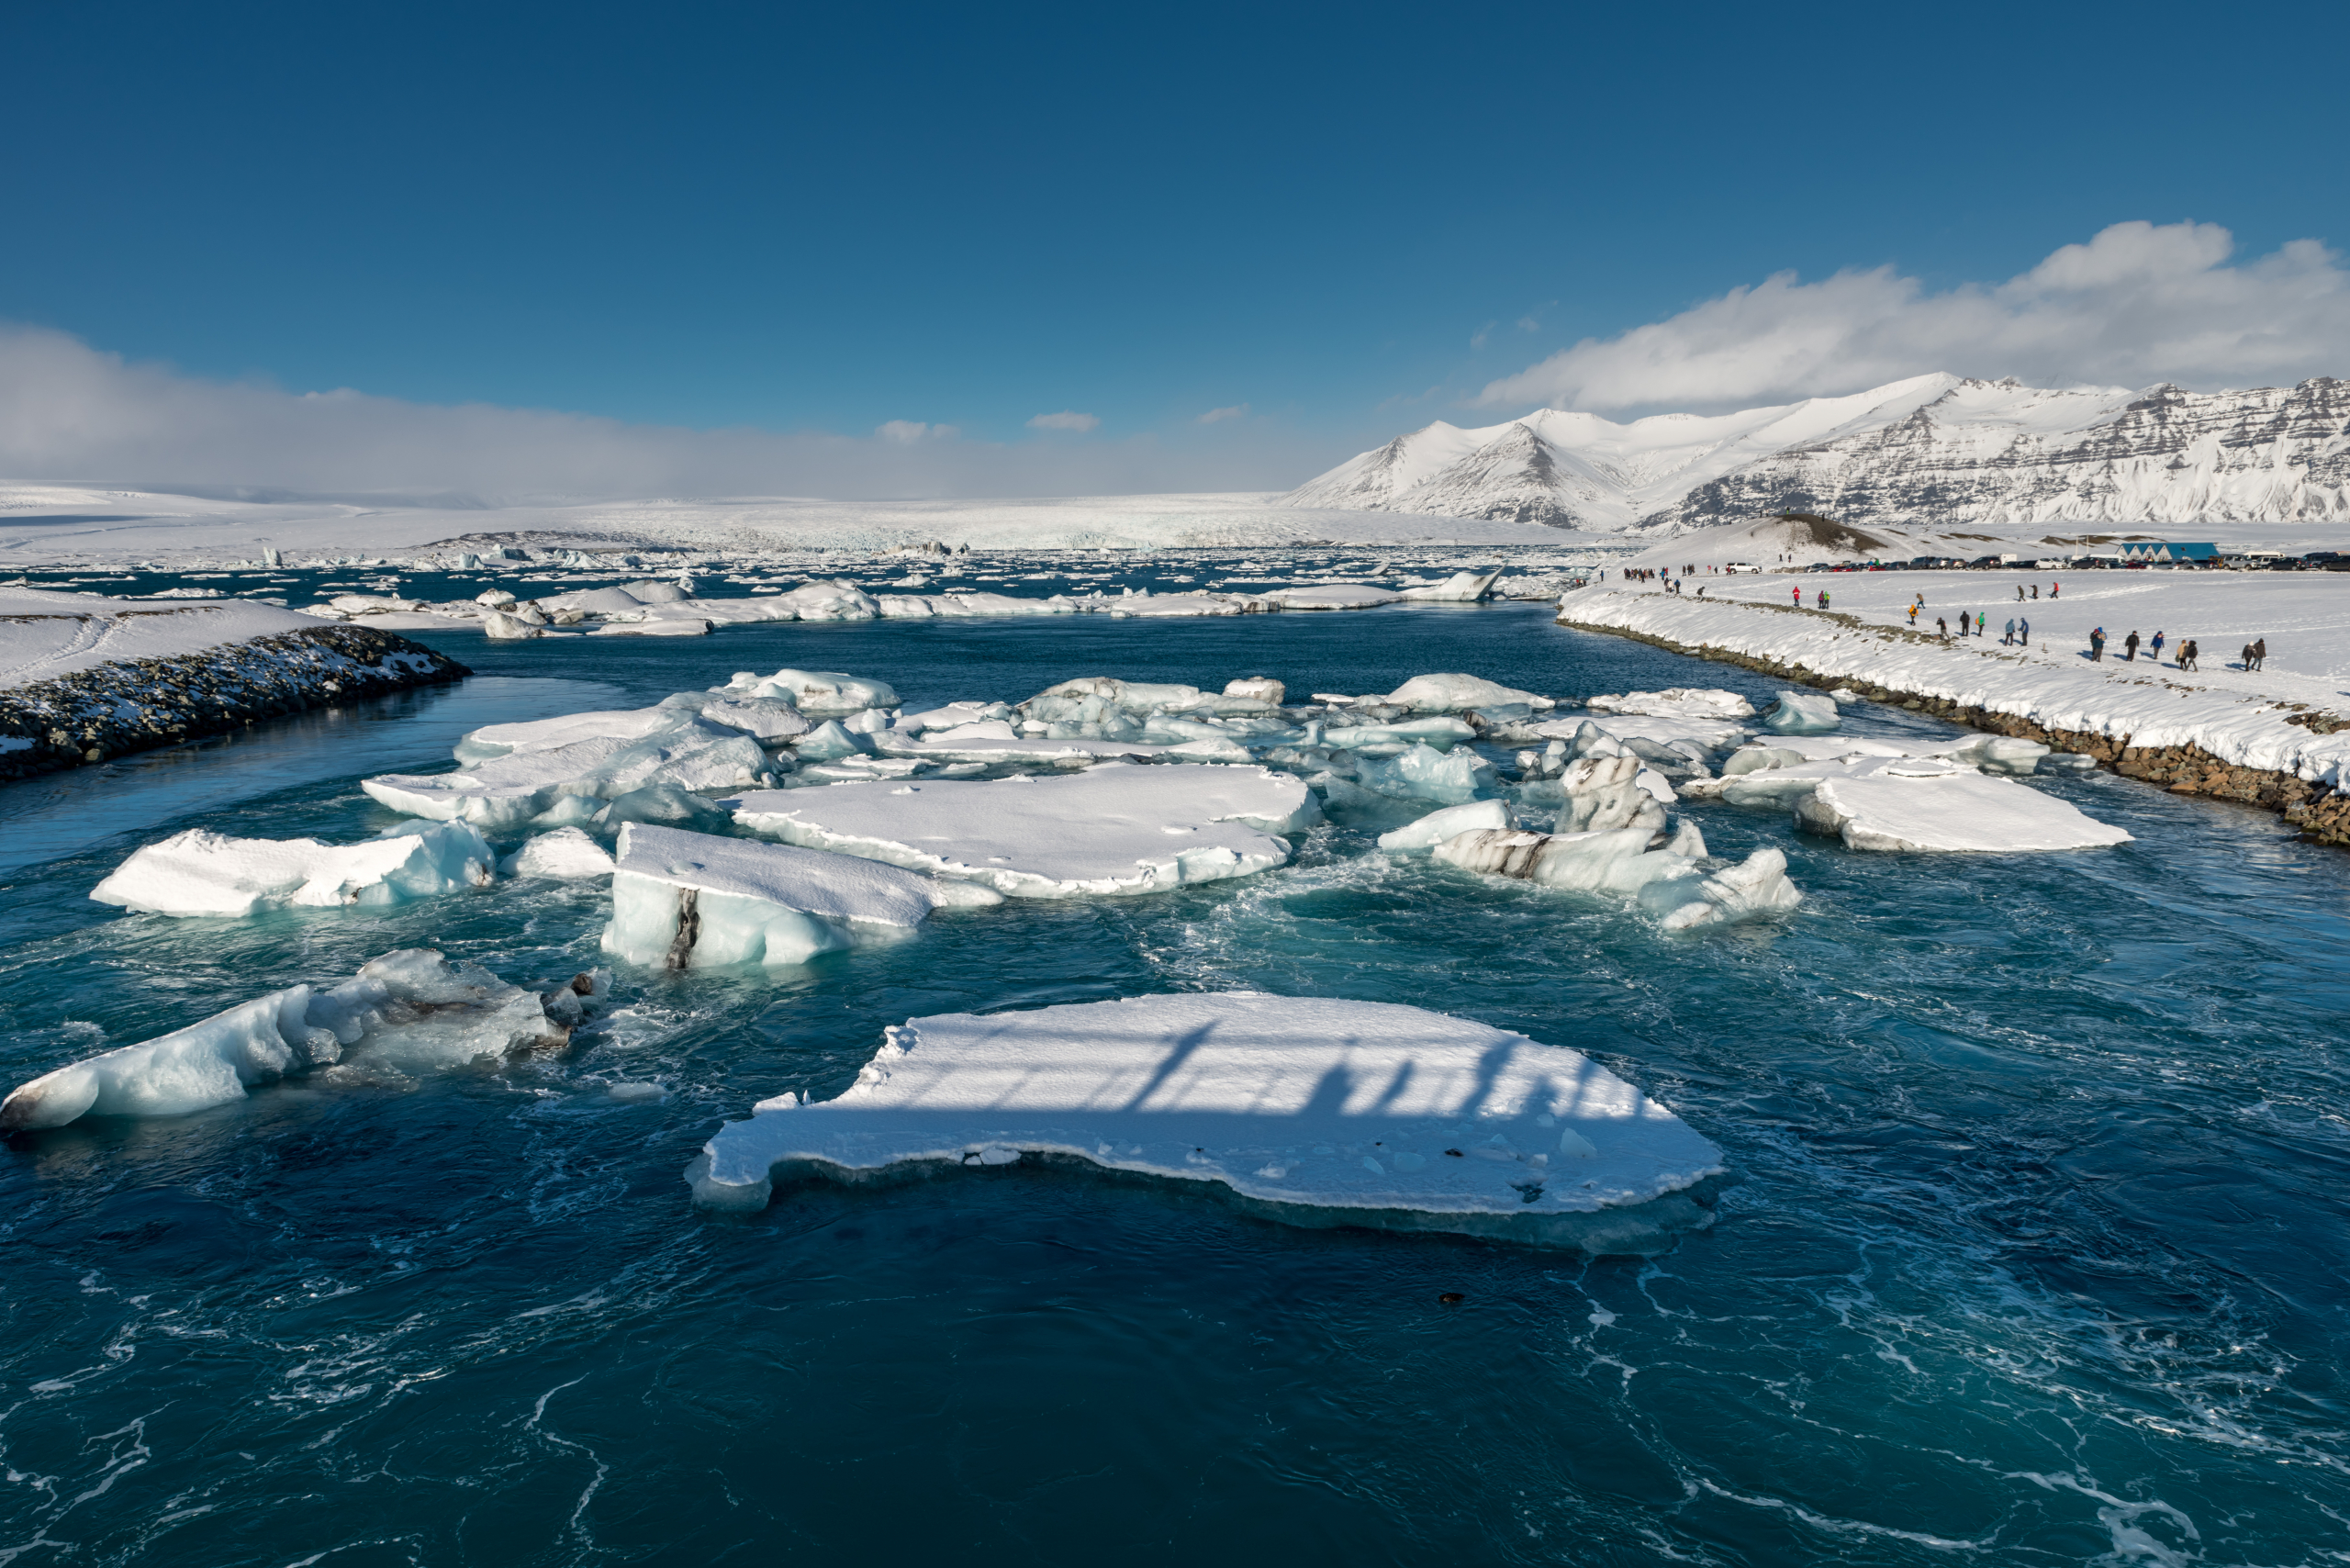 DAS tehnologija otkriva brze promene morskog leda u arktičkom regionu